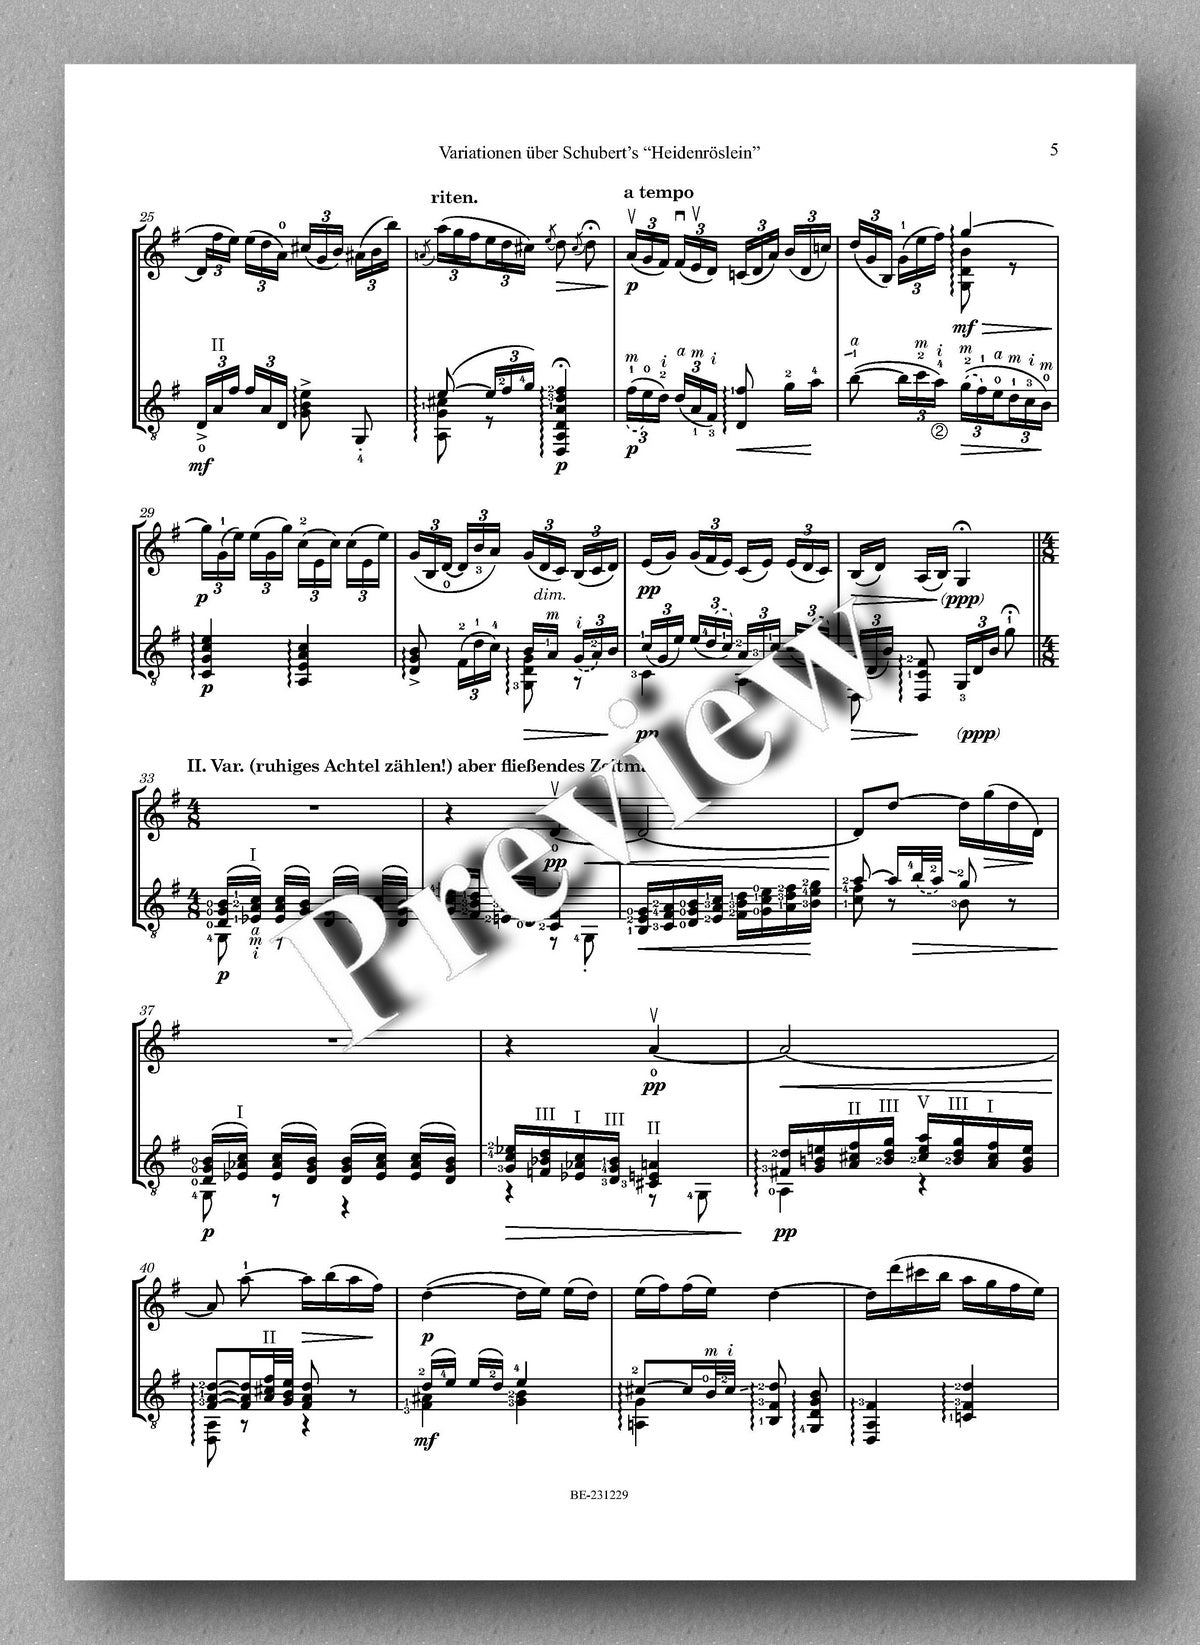 Ferdinand Rebay, Variationen über Schubert’s “Heidenröslein” - preview of the music score 2